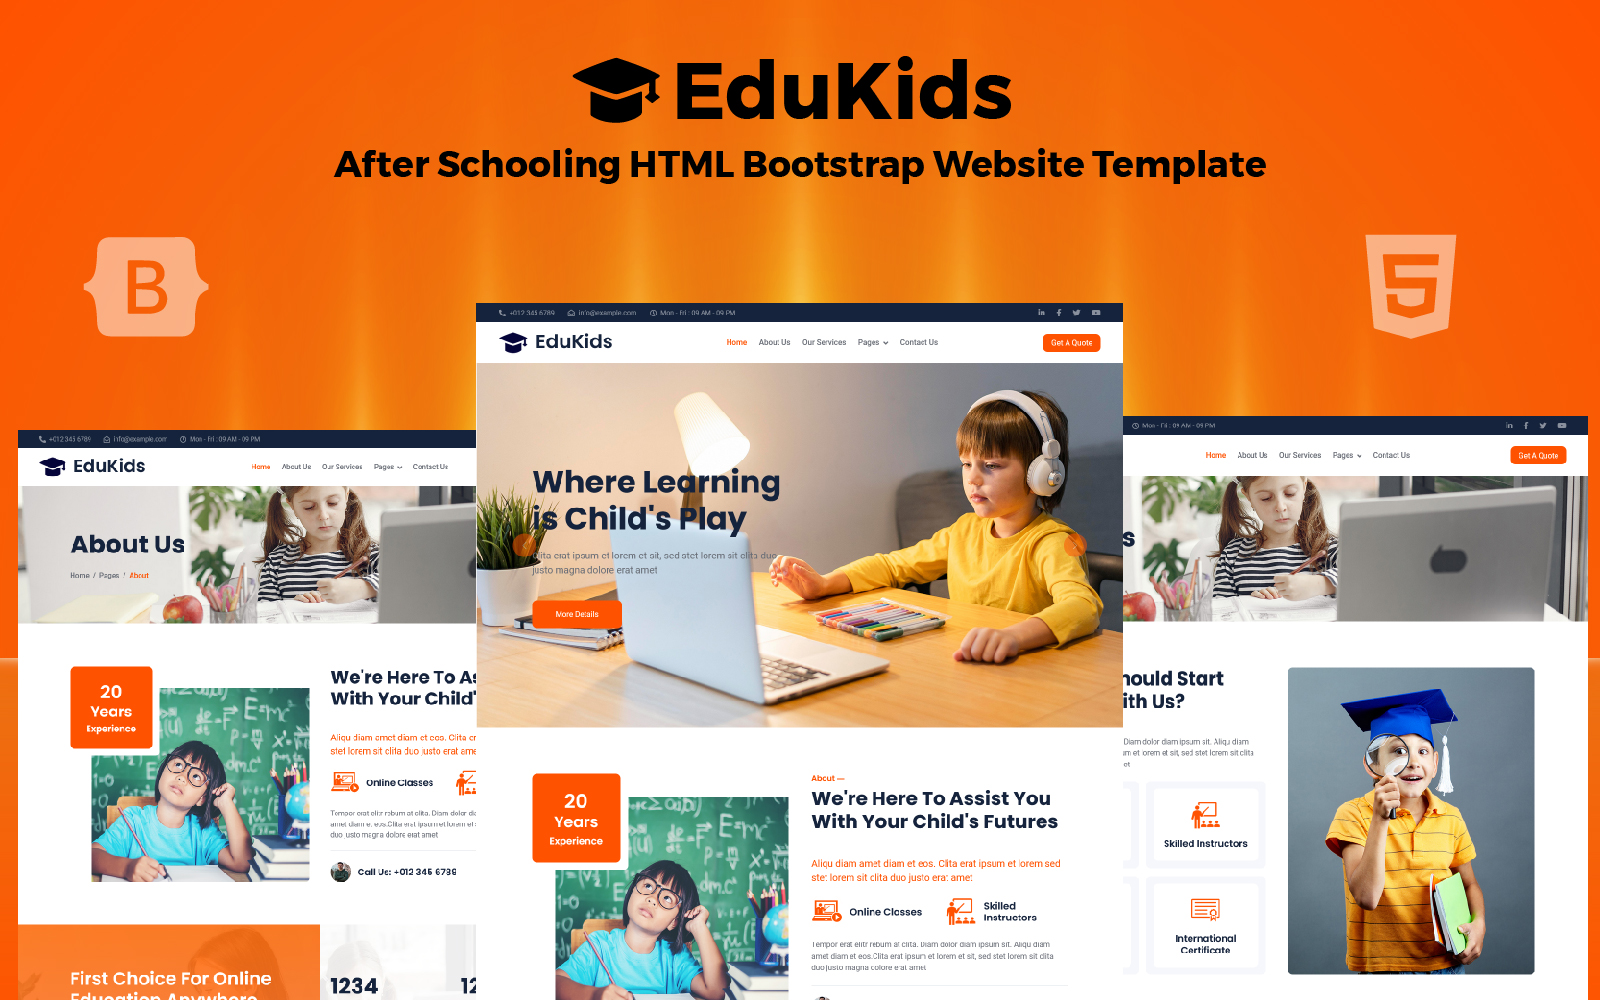 EduKids - After Schooling HTML Bootstrap Website Template